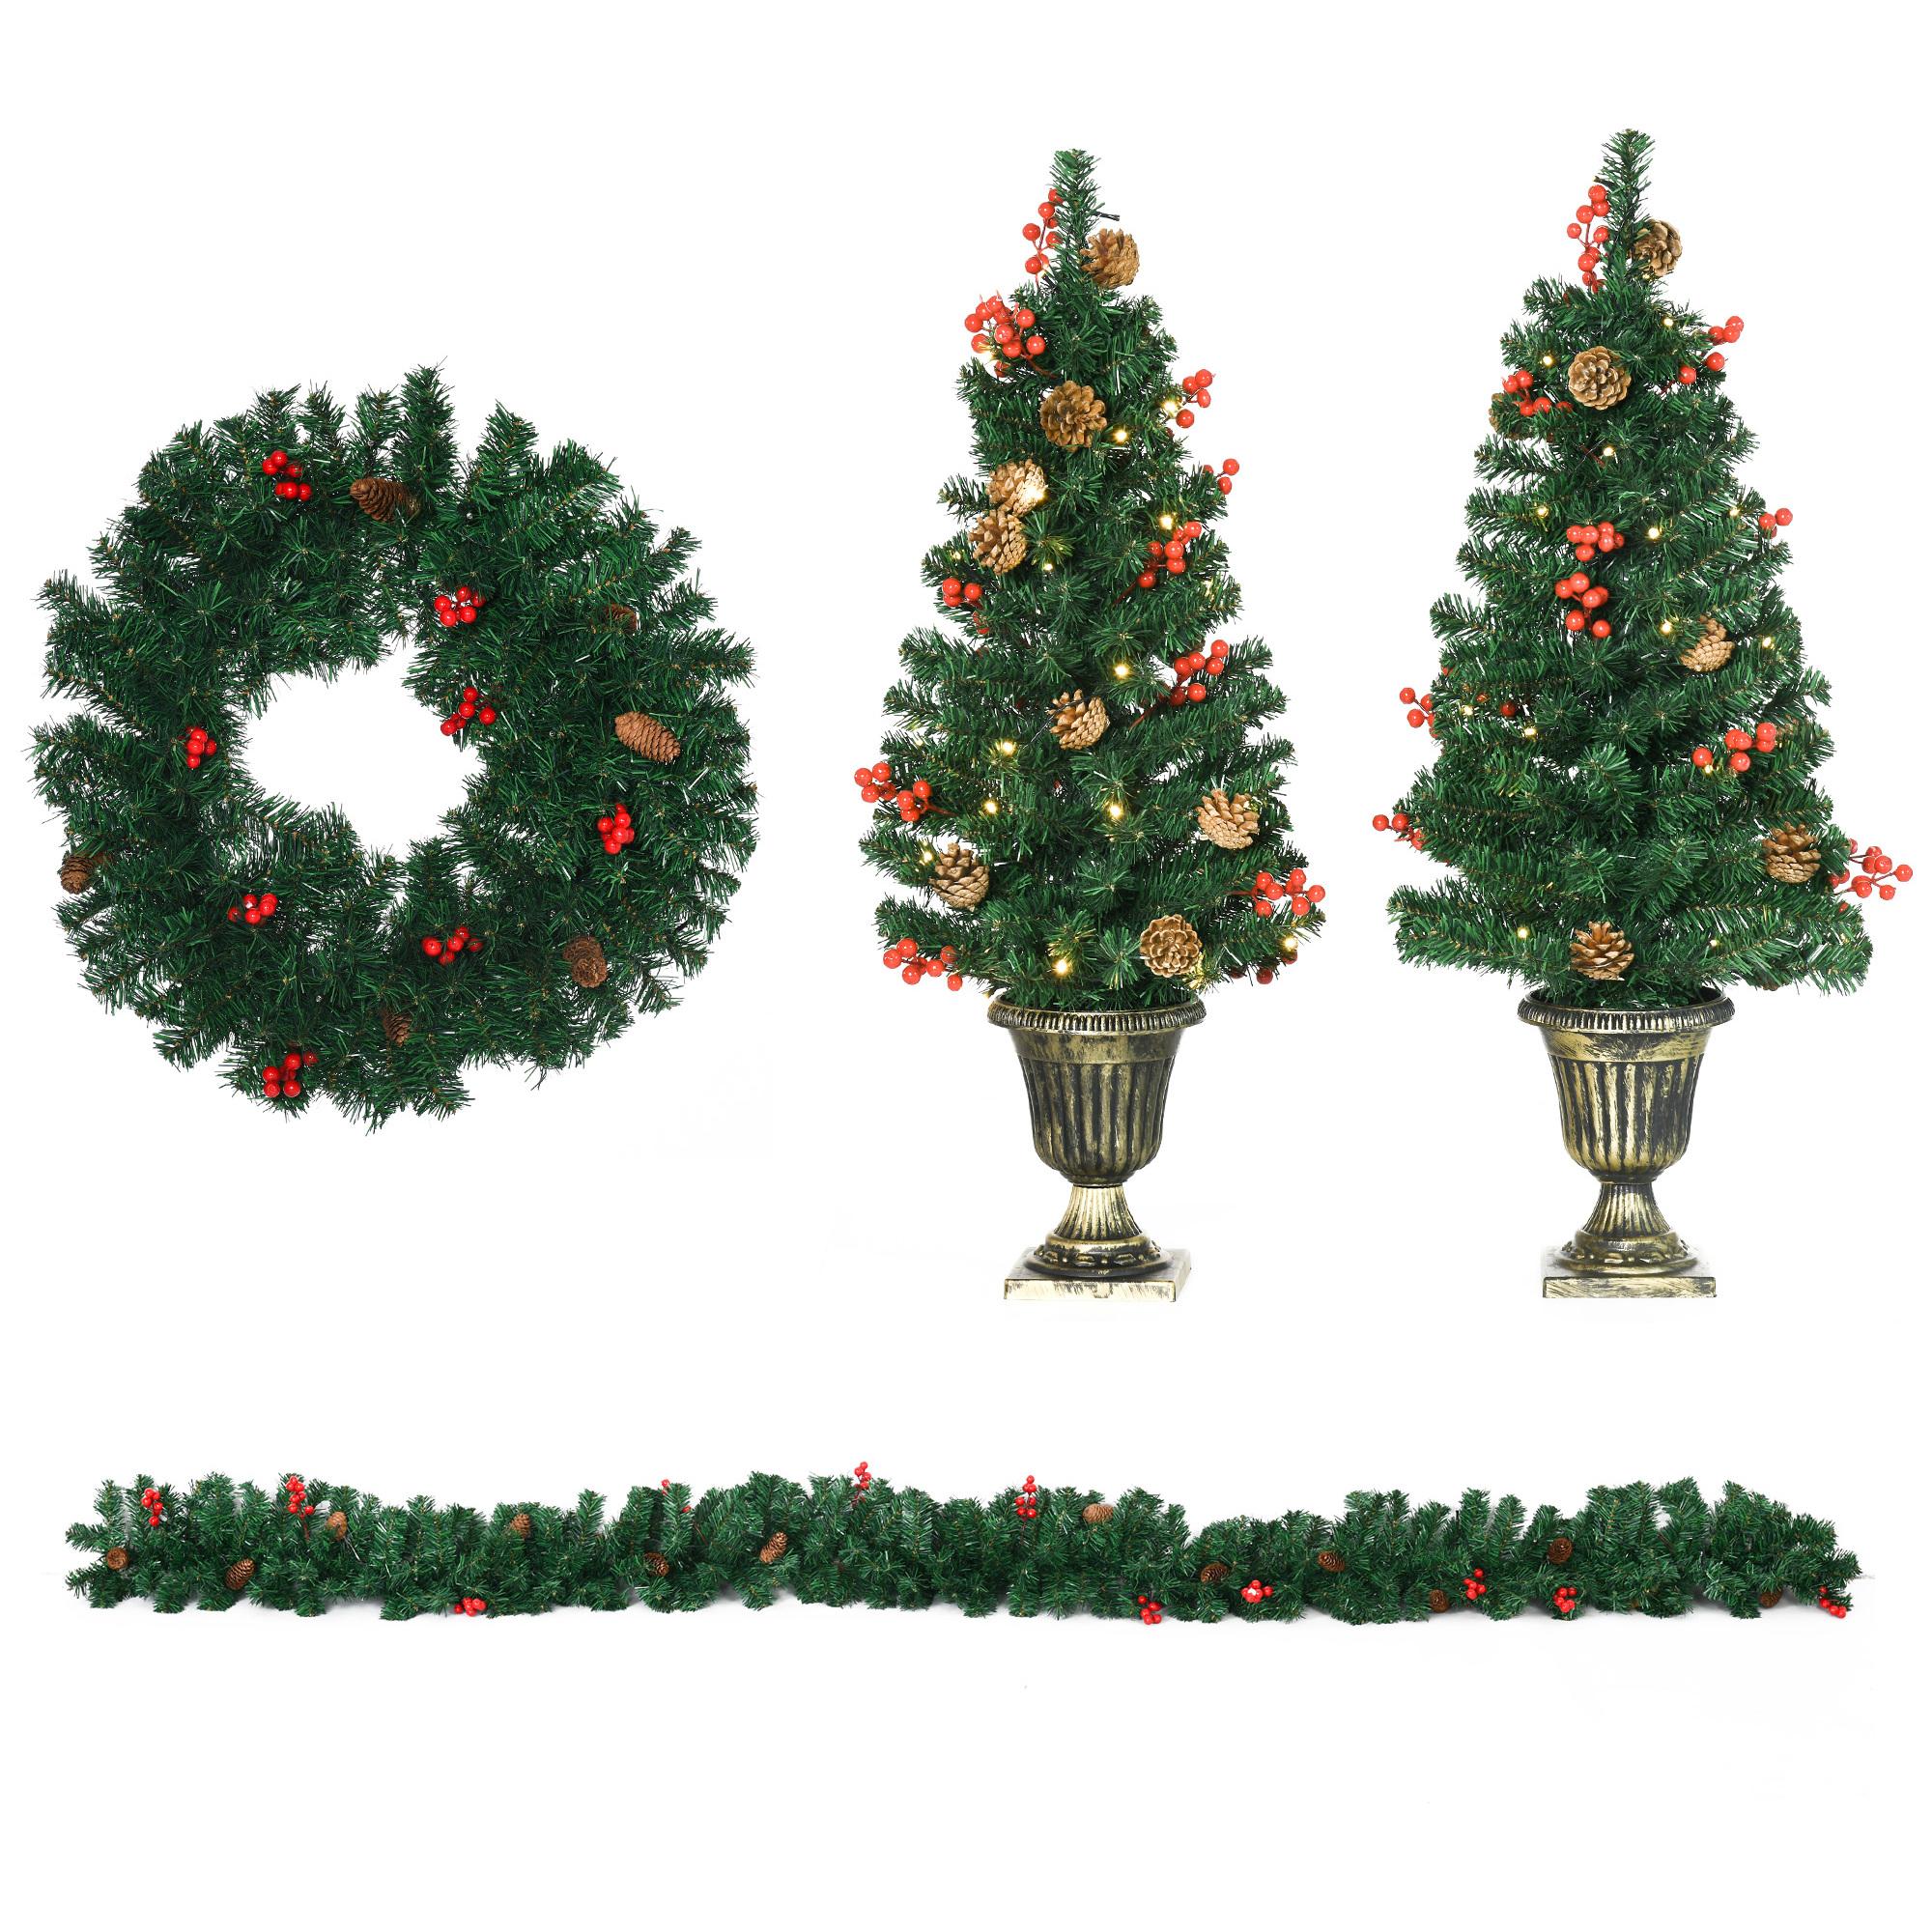 HOMCOM Conjunto de Árbol de Navidad de Entrada 4 Piezas Adornos Navideños con 2 Árboles de Navidad Guirnalda y Corona con Luces LED Blanco Cálido Bayas Rojas 40x40x90 cm Verde